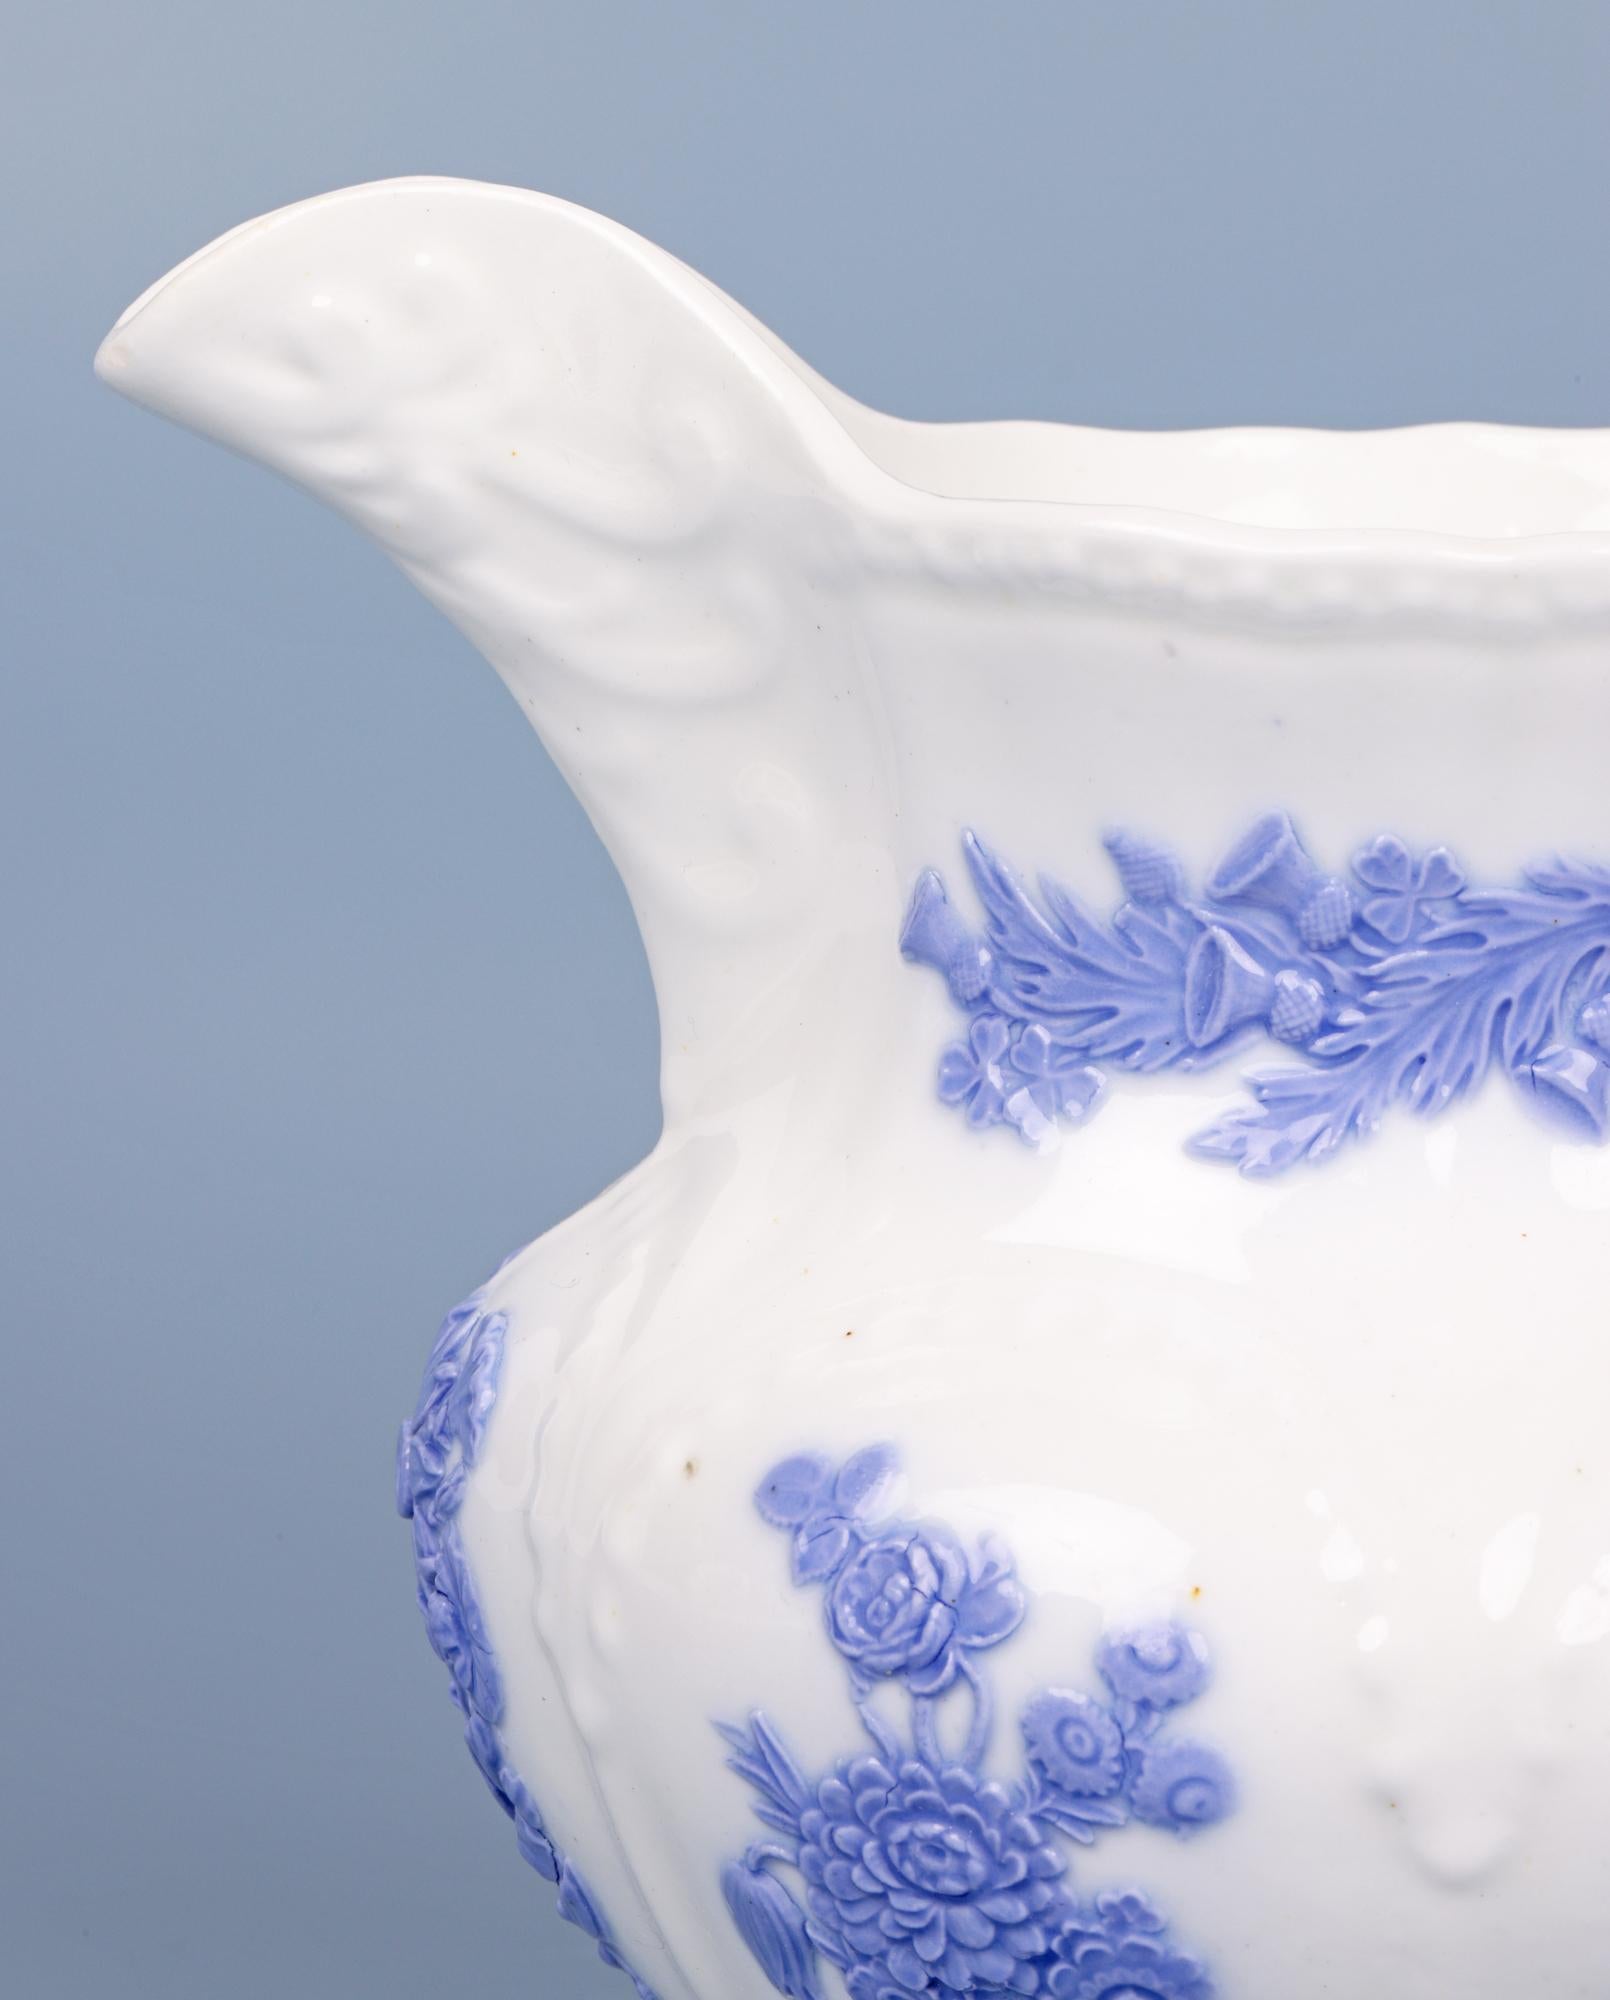 Une très belle cruche ancienne en porcelaine anglaise du Staffordshire décorée de motifs floraux lilas et datant d'environ 1830. La cruche, finement réalisée en porcelaine blanche, est de forme arrondie et repose sur un pied étroit et rond en forme